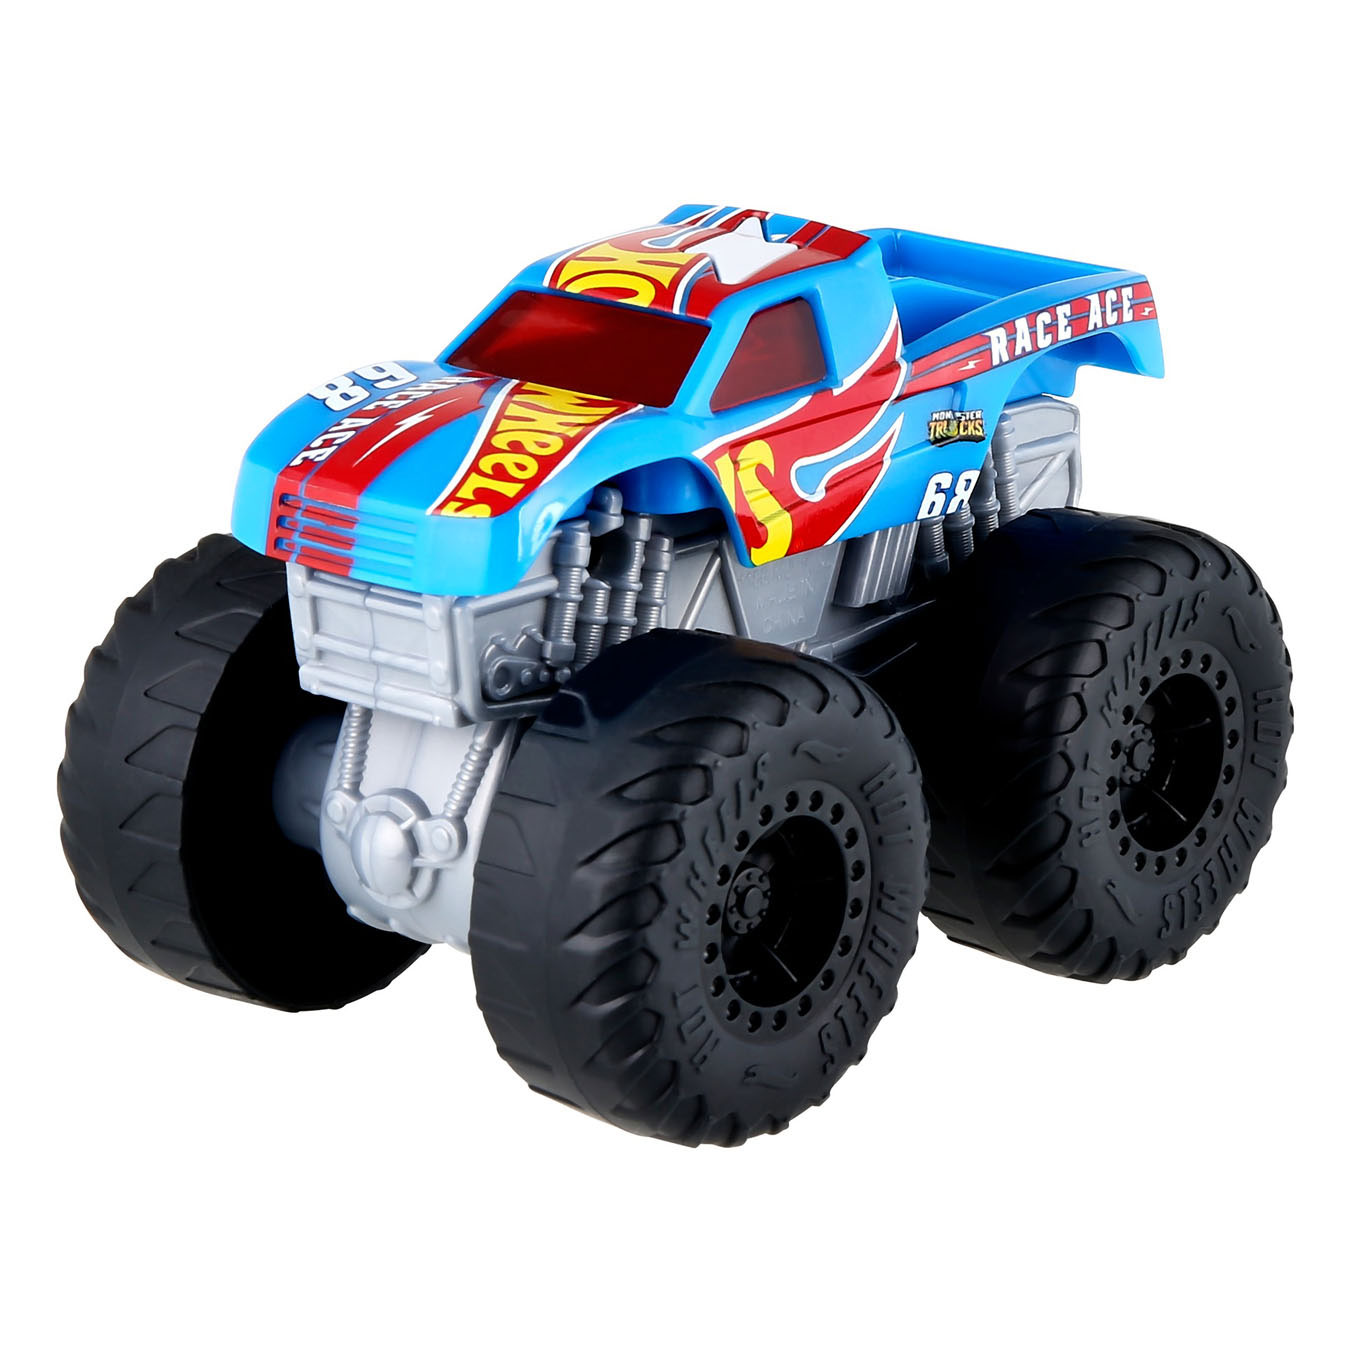 Hot Wheels Monster Trucks Roarin' Wreckers Race Ace 1:43